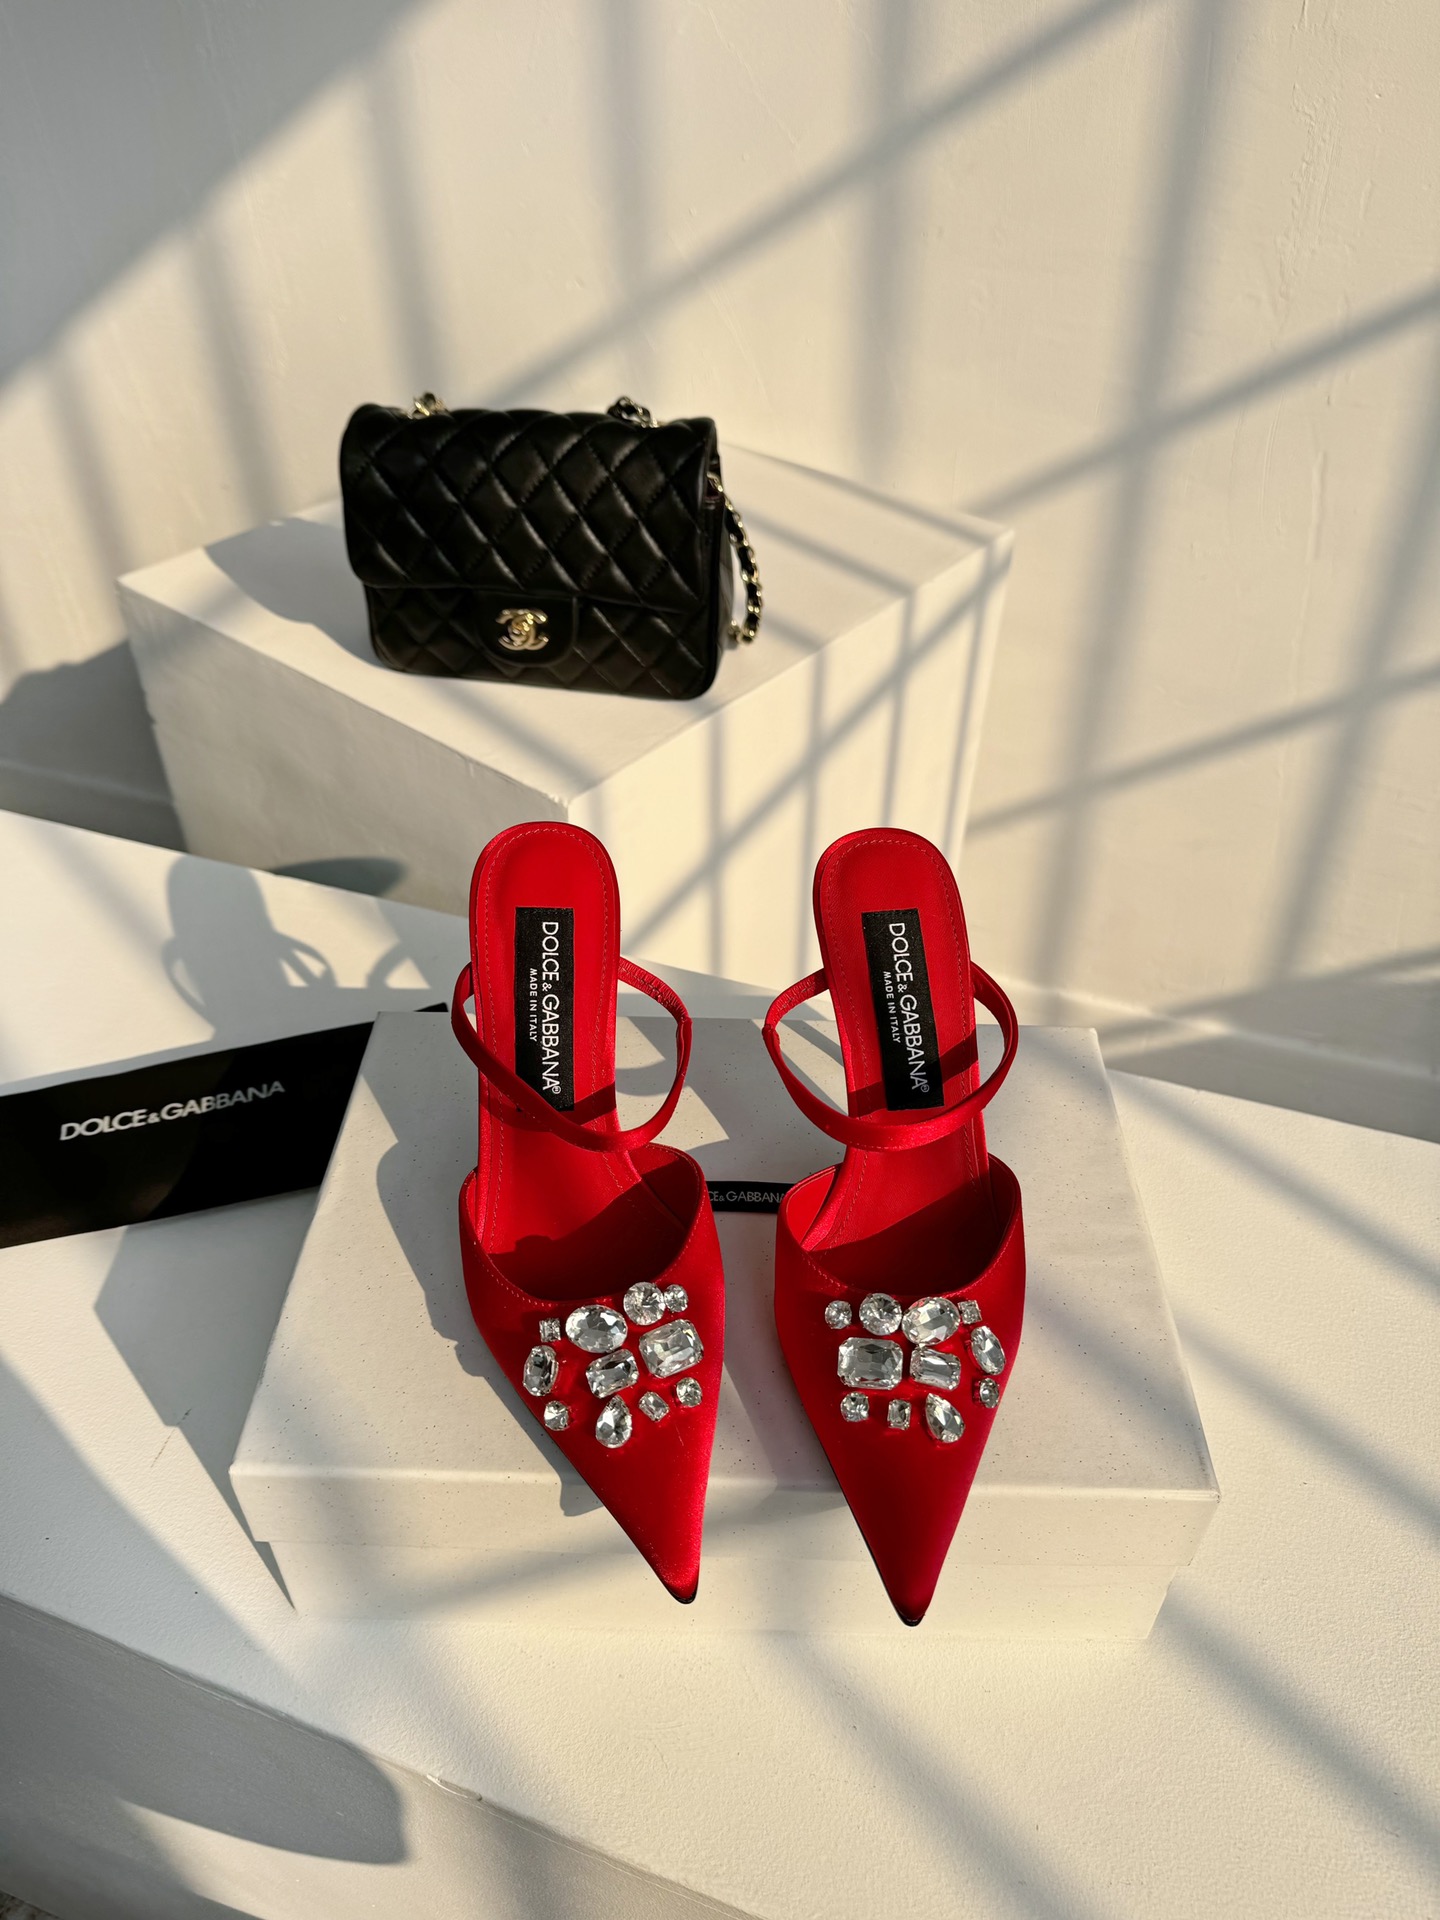 D&G古典与现代碰撞出的意式浪漫美学杜嘉班纳Dolce&Gabbana真丝系列超高跟露趾凉拖线条版型看得